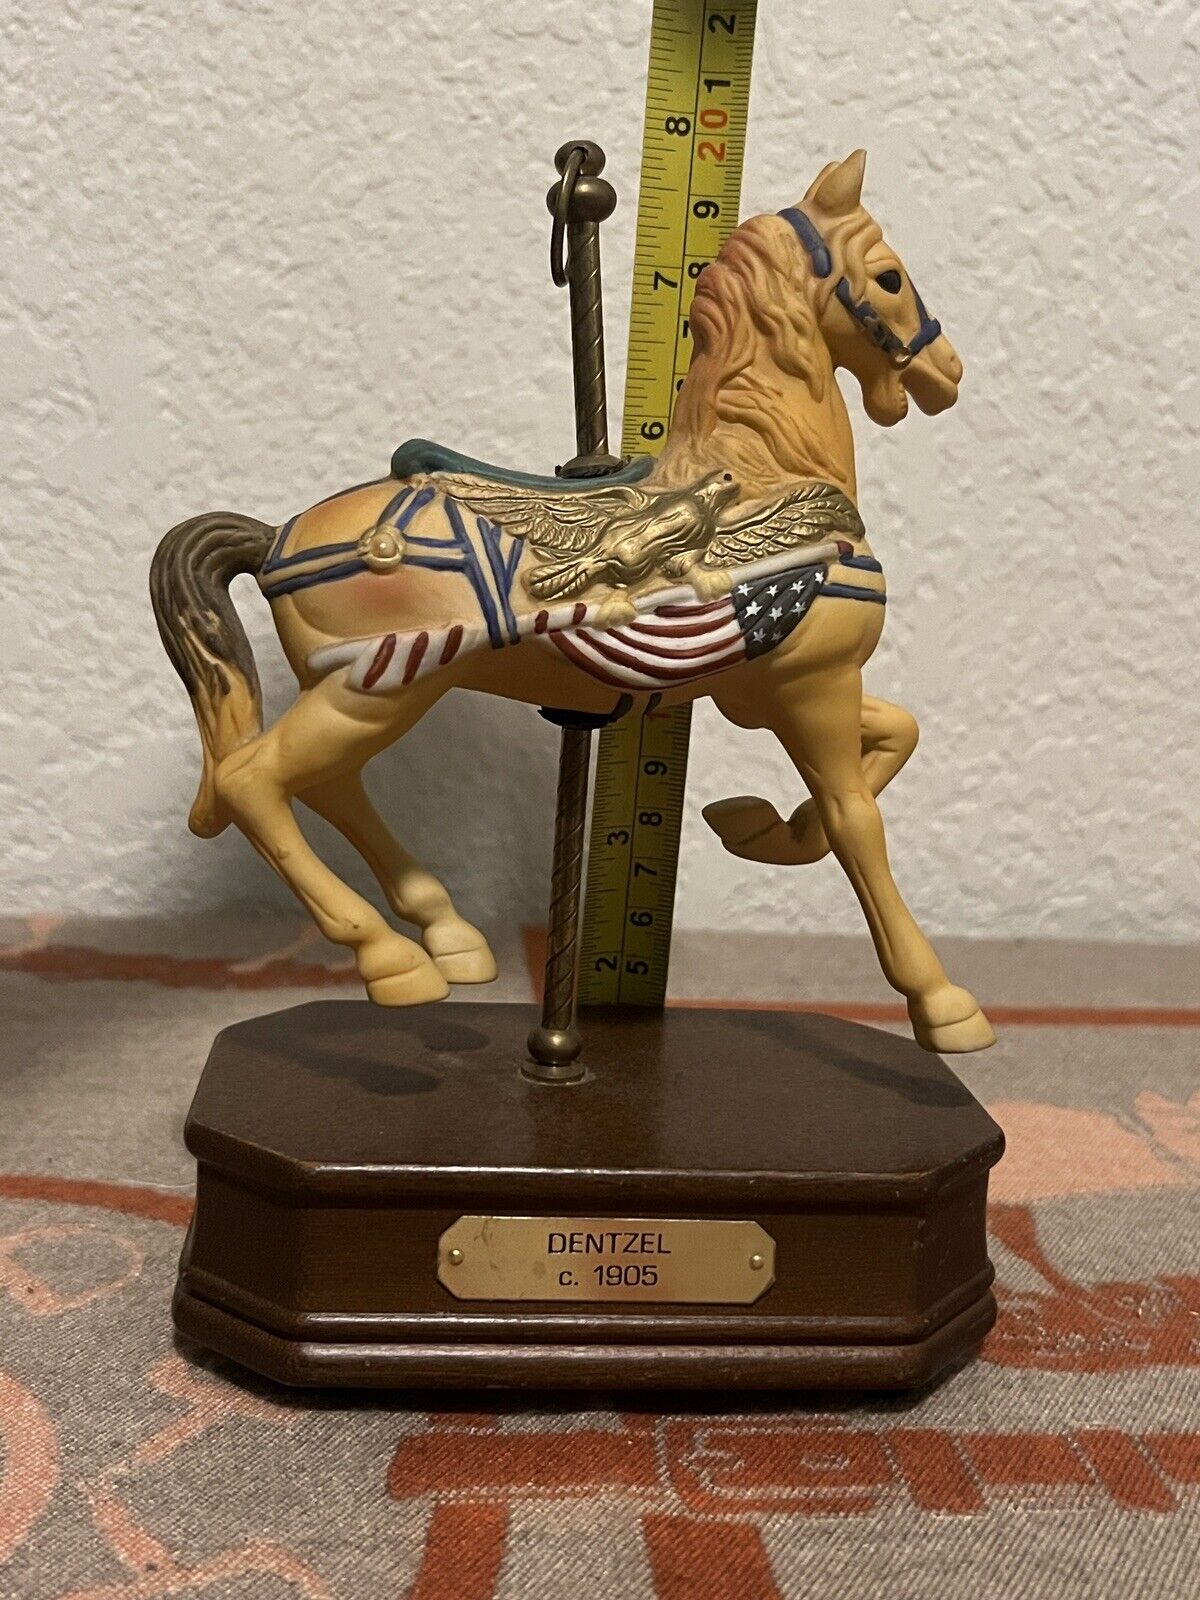 IMPULSE GIFTWARE   DENTZEL   C.1905   Porcelain  Carousel   Musical  Horse